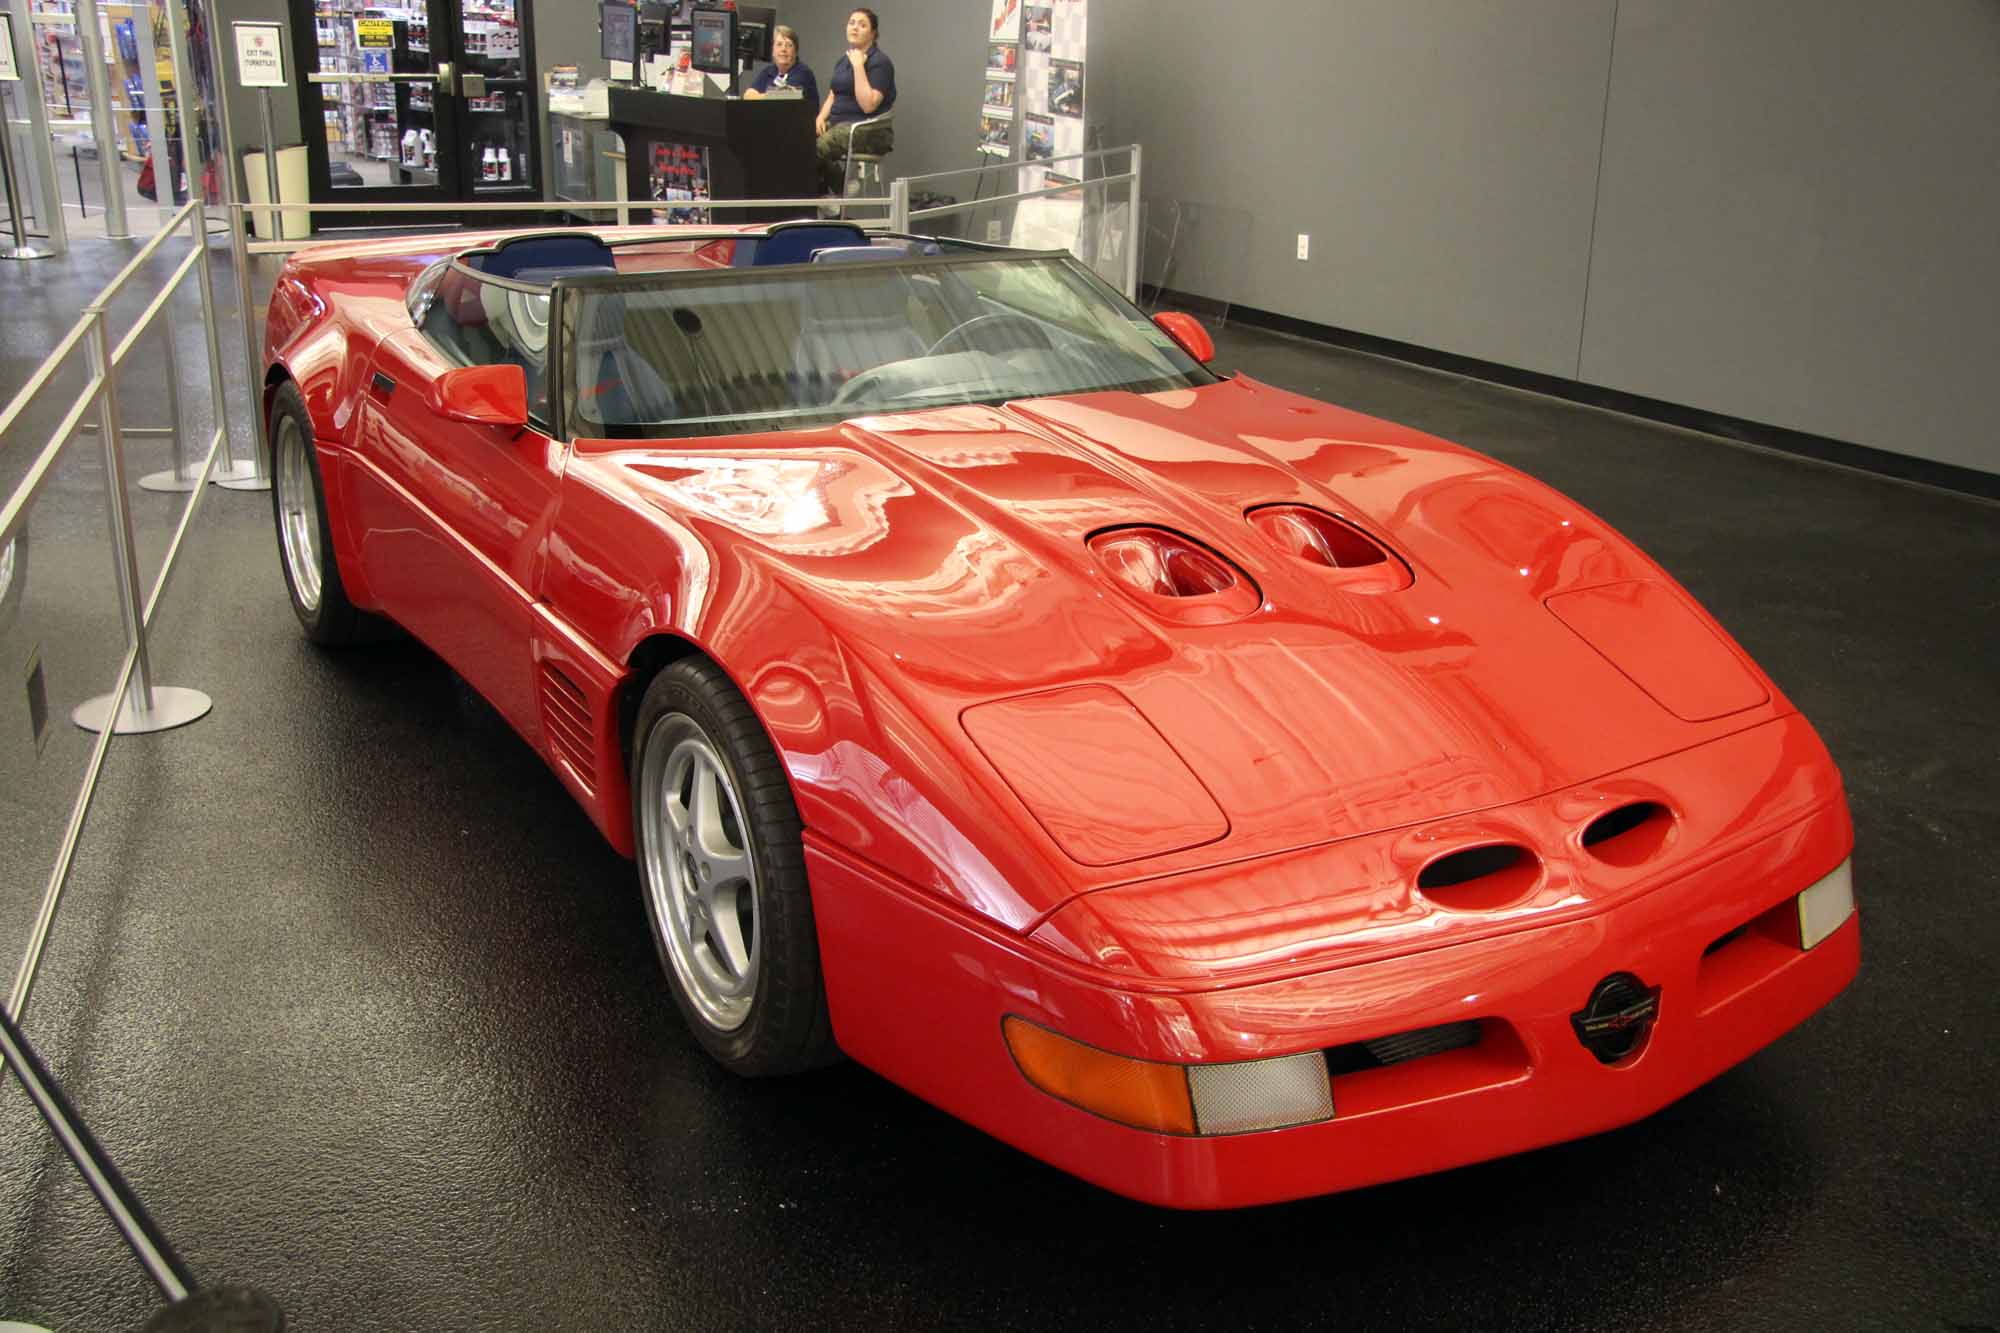 Callaway C4 Corvette at National Corvette Museum